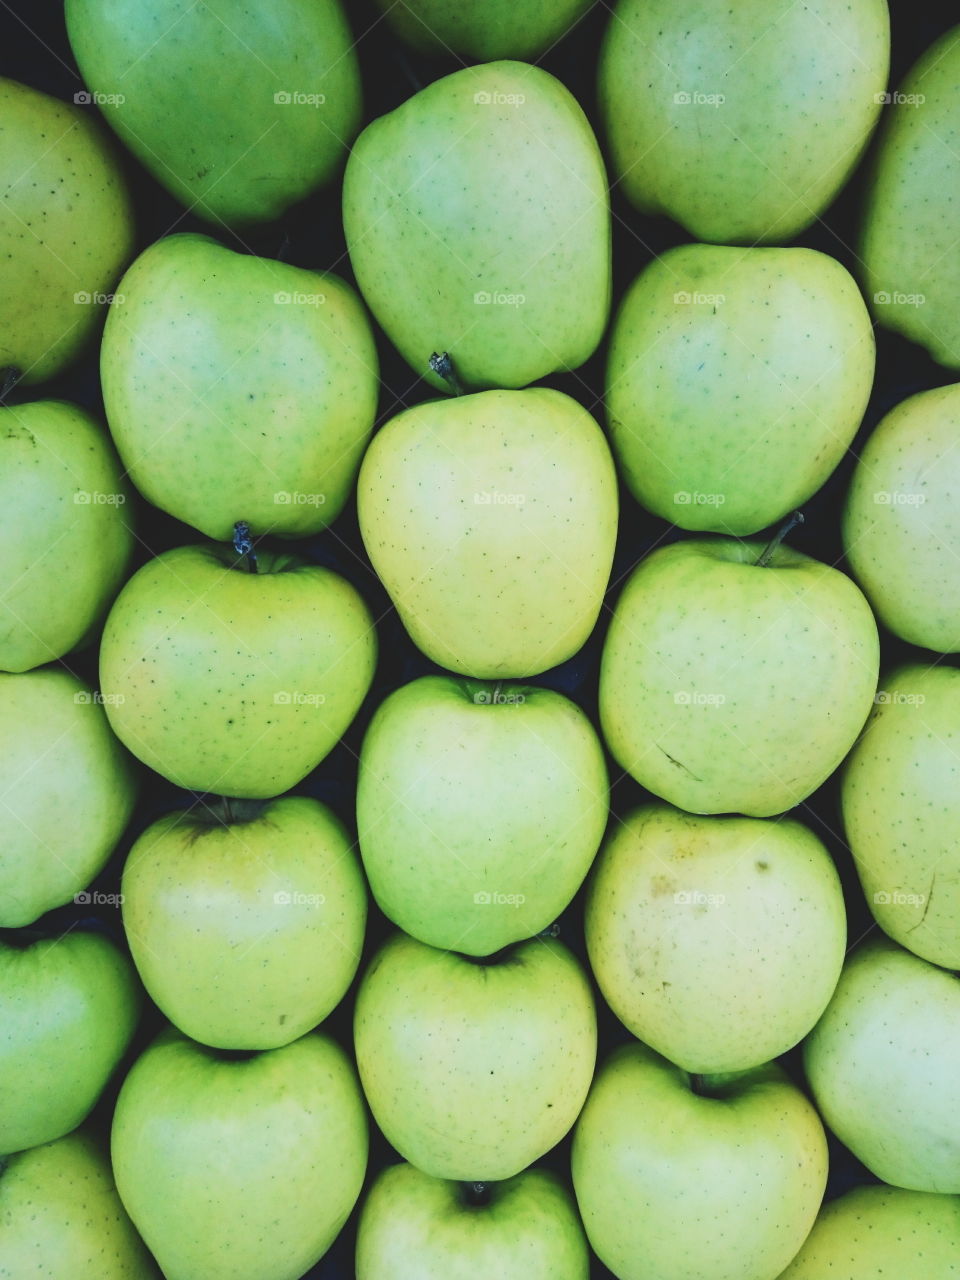 Full frame of green apples